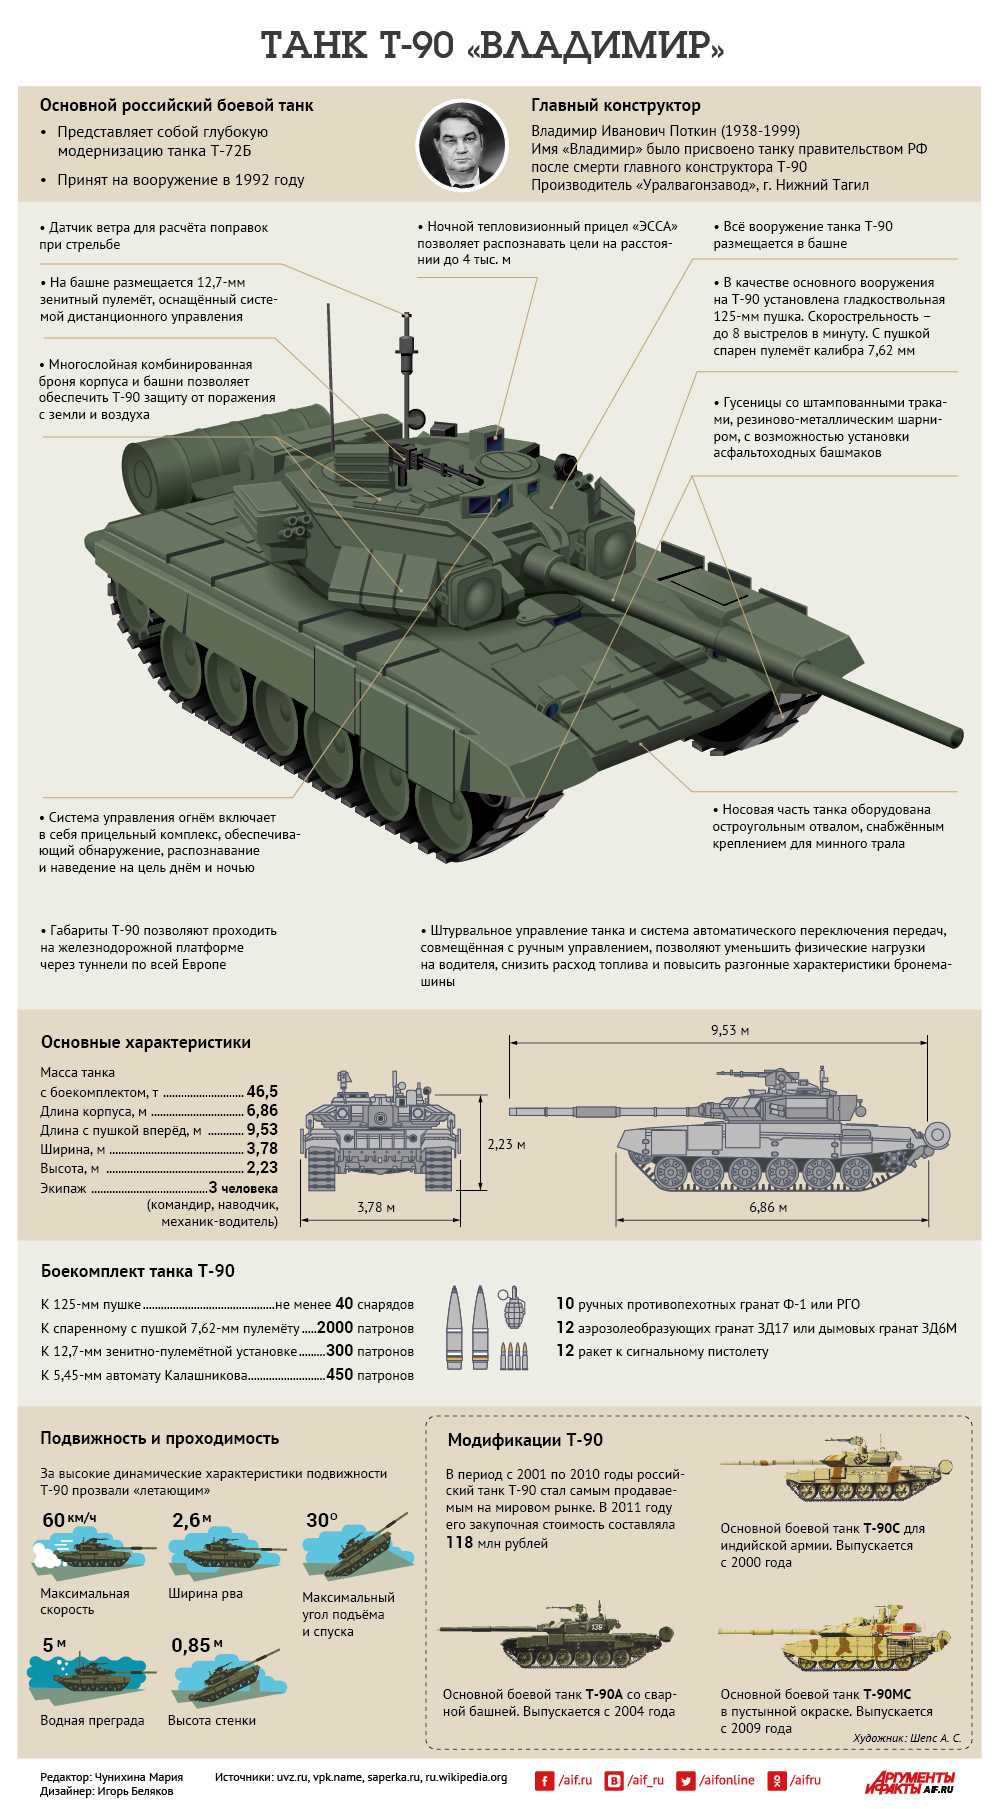 Количество модификаций Т-90